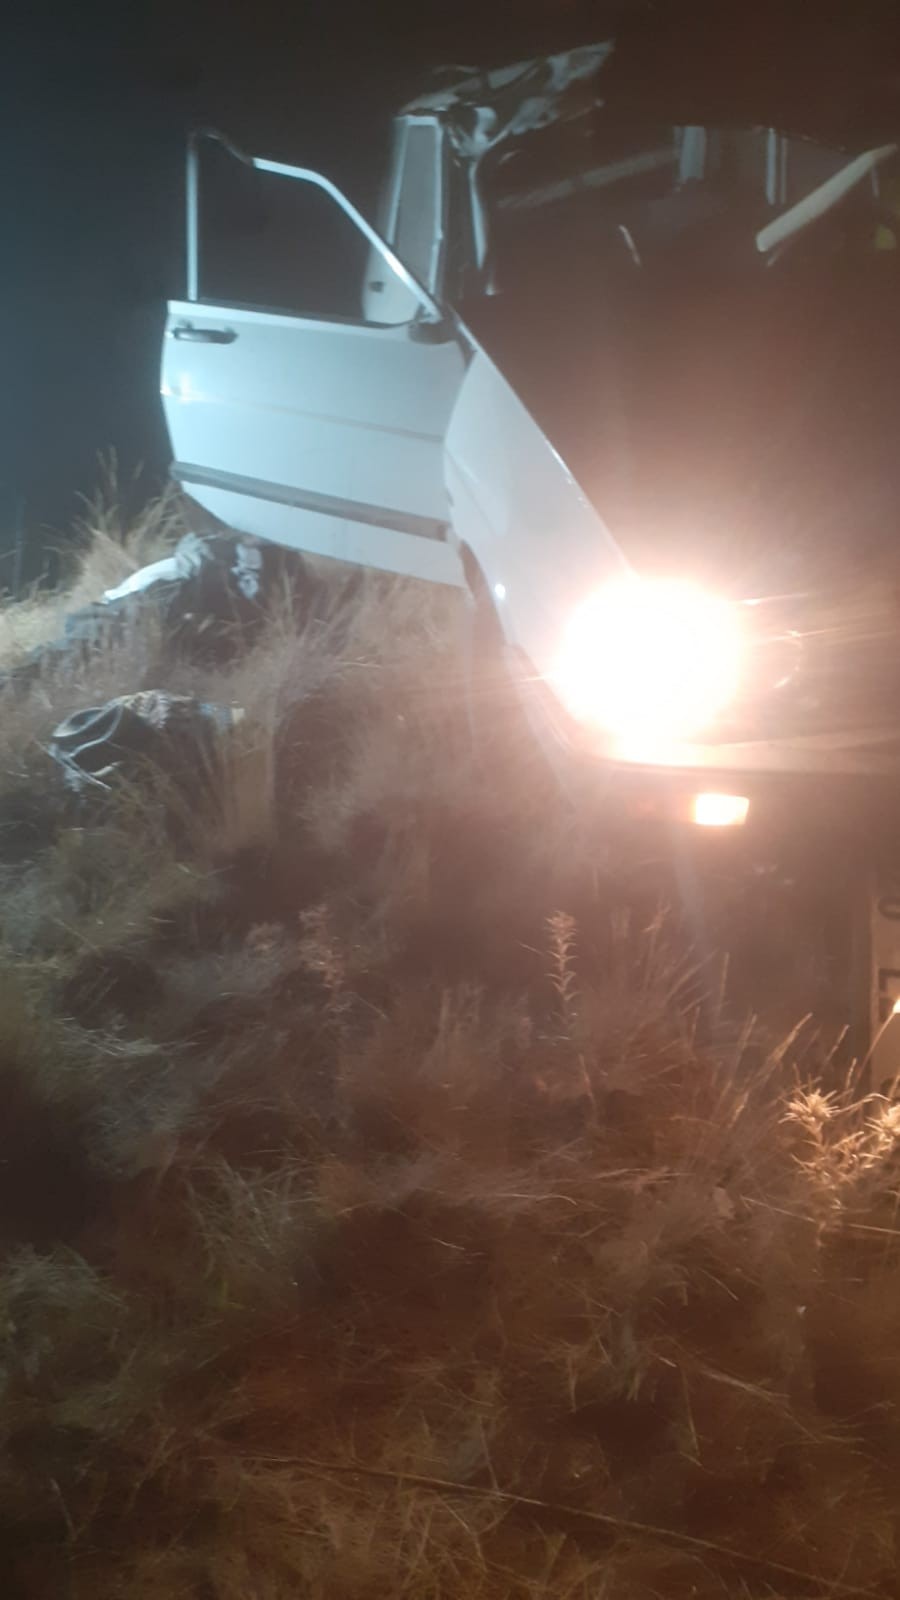 Denizli’nin Çivril ilçesinde sürücüsünün direksiyon hakimiyetin kaybettiği otomobil taklalar atarak şarampole uçtu. Kazada otomobil sürücüsü hayatını kaybetti.